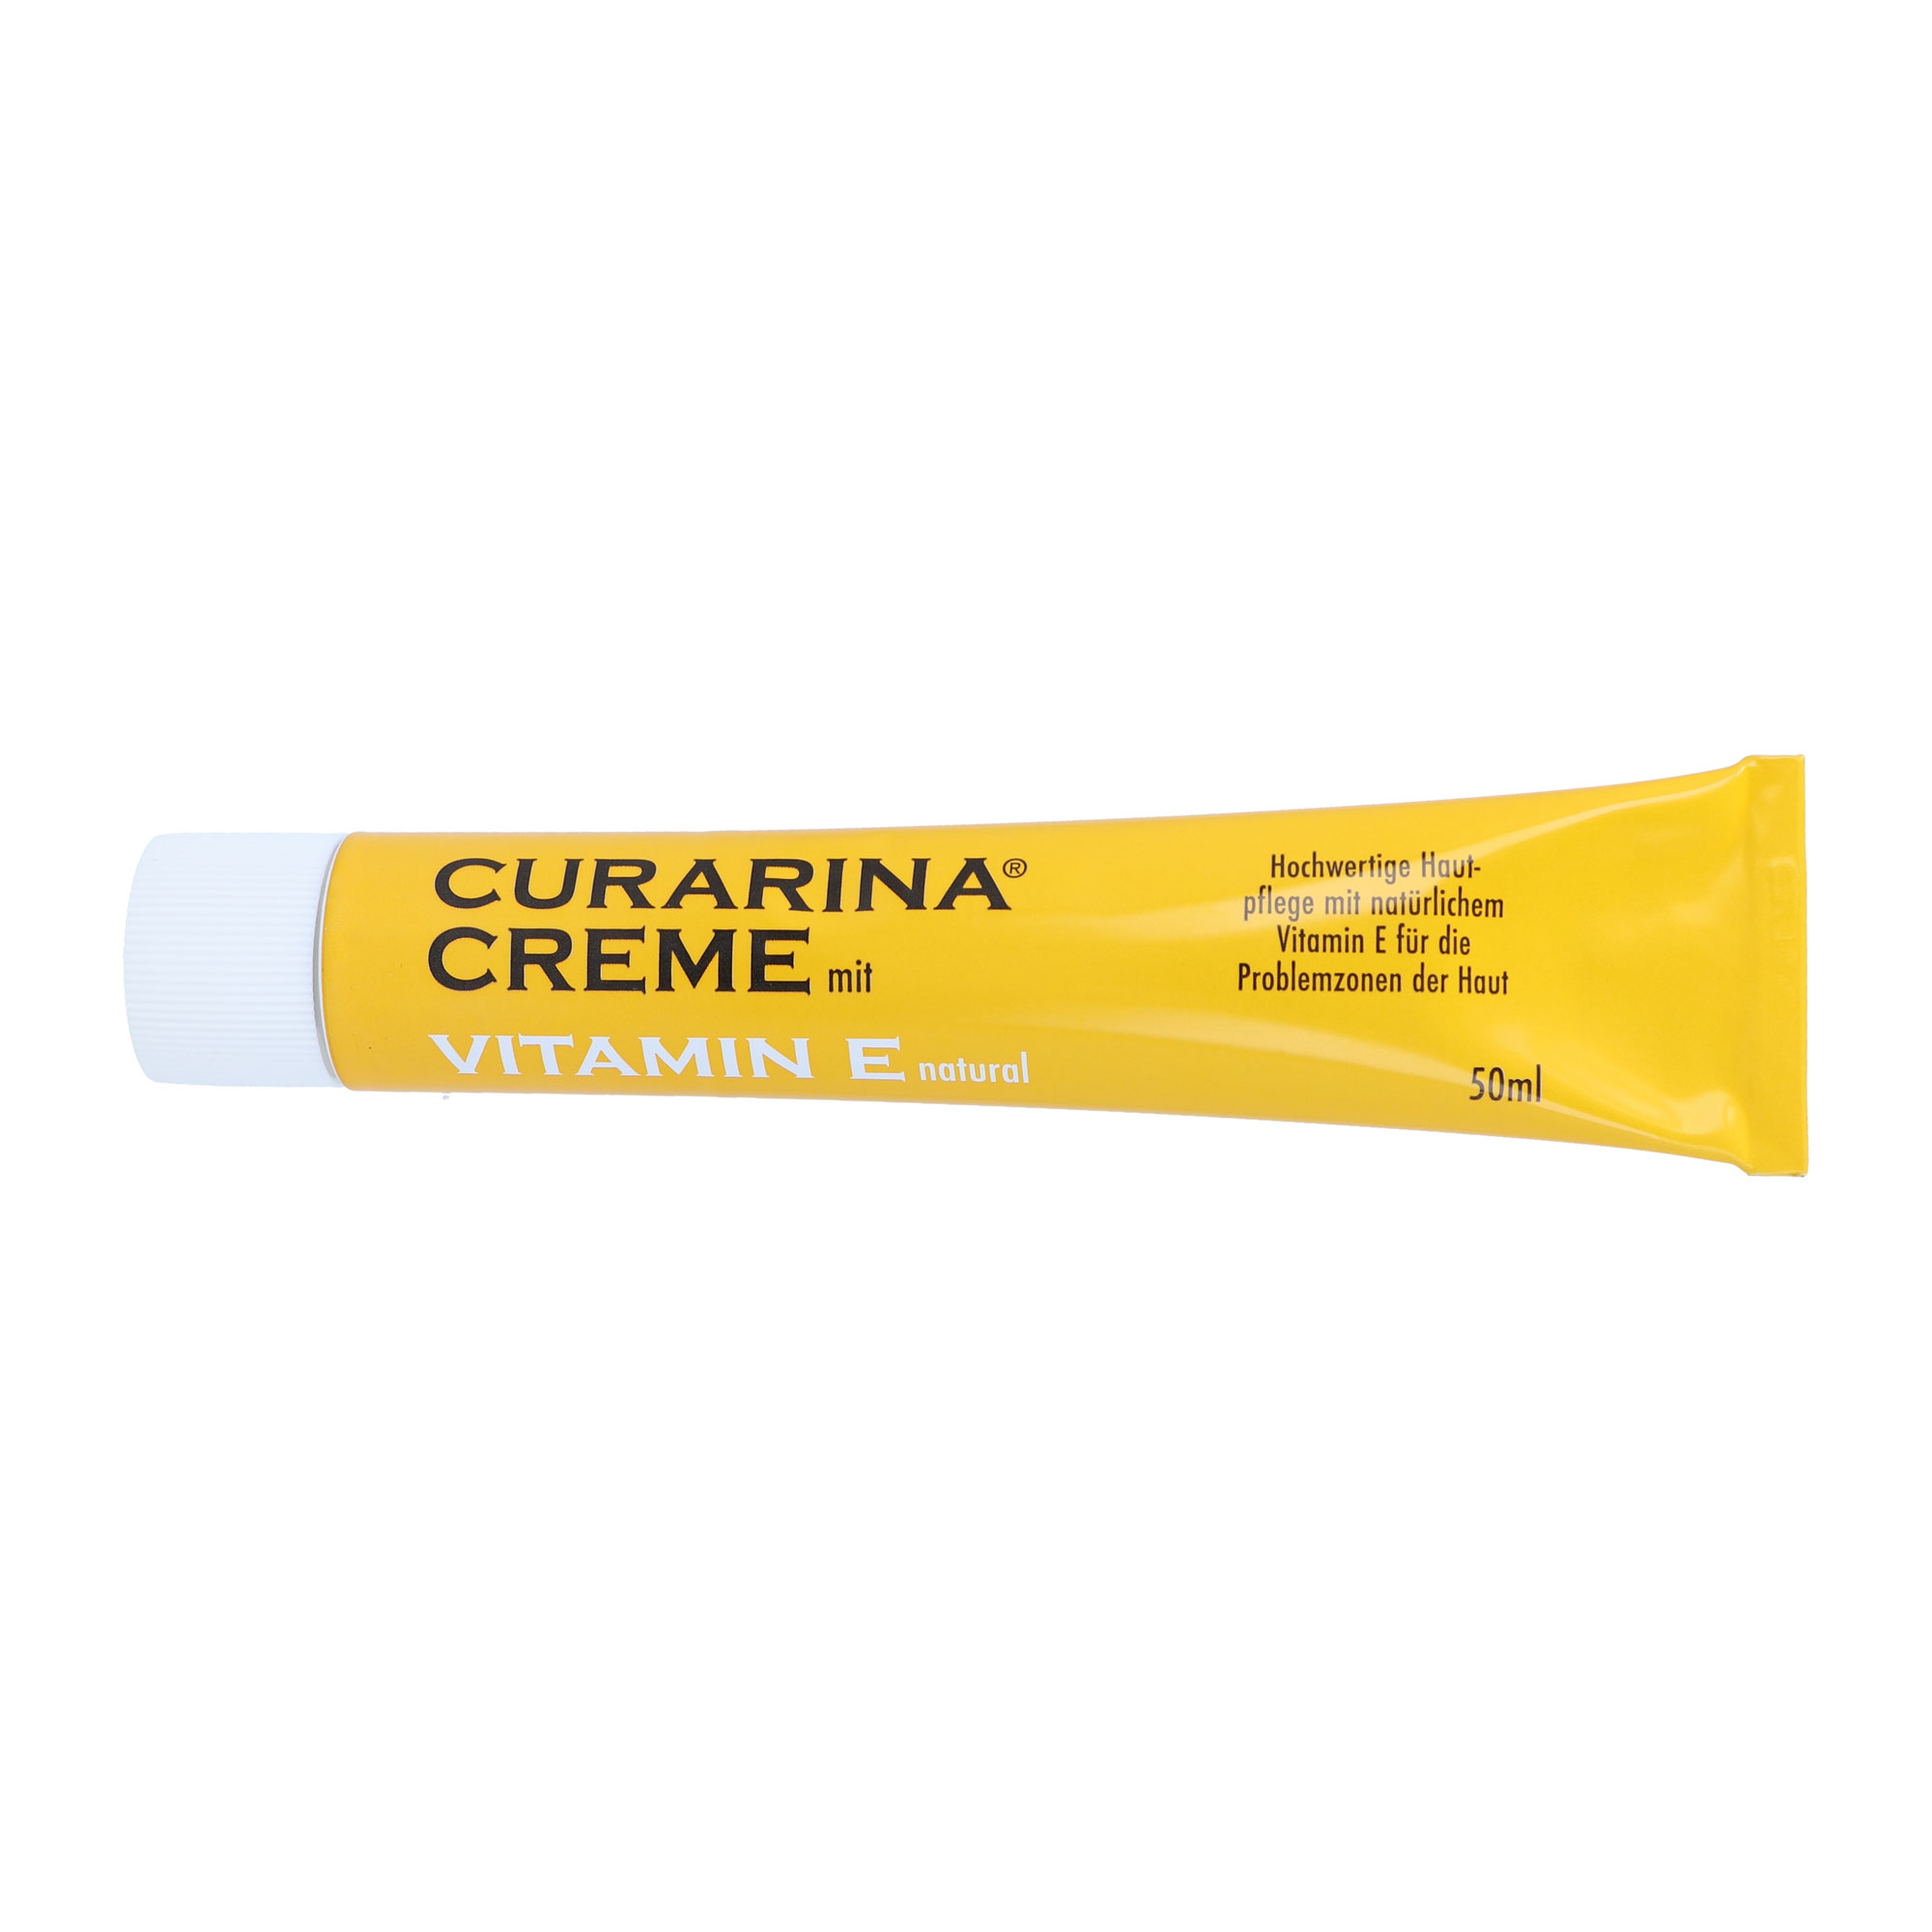 Creme mit Vitamin E zur Pflege der Haut.